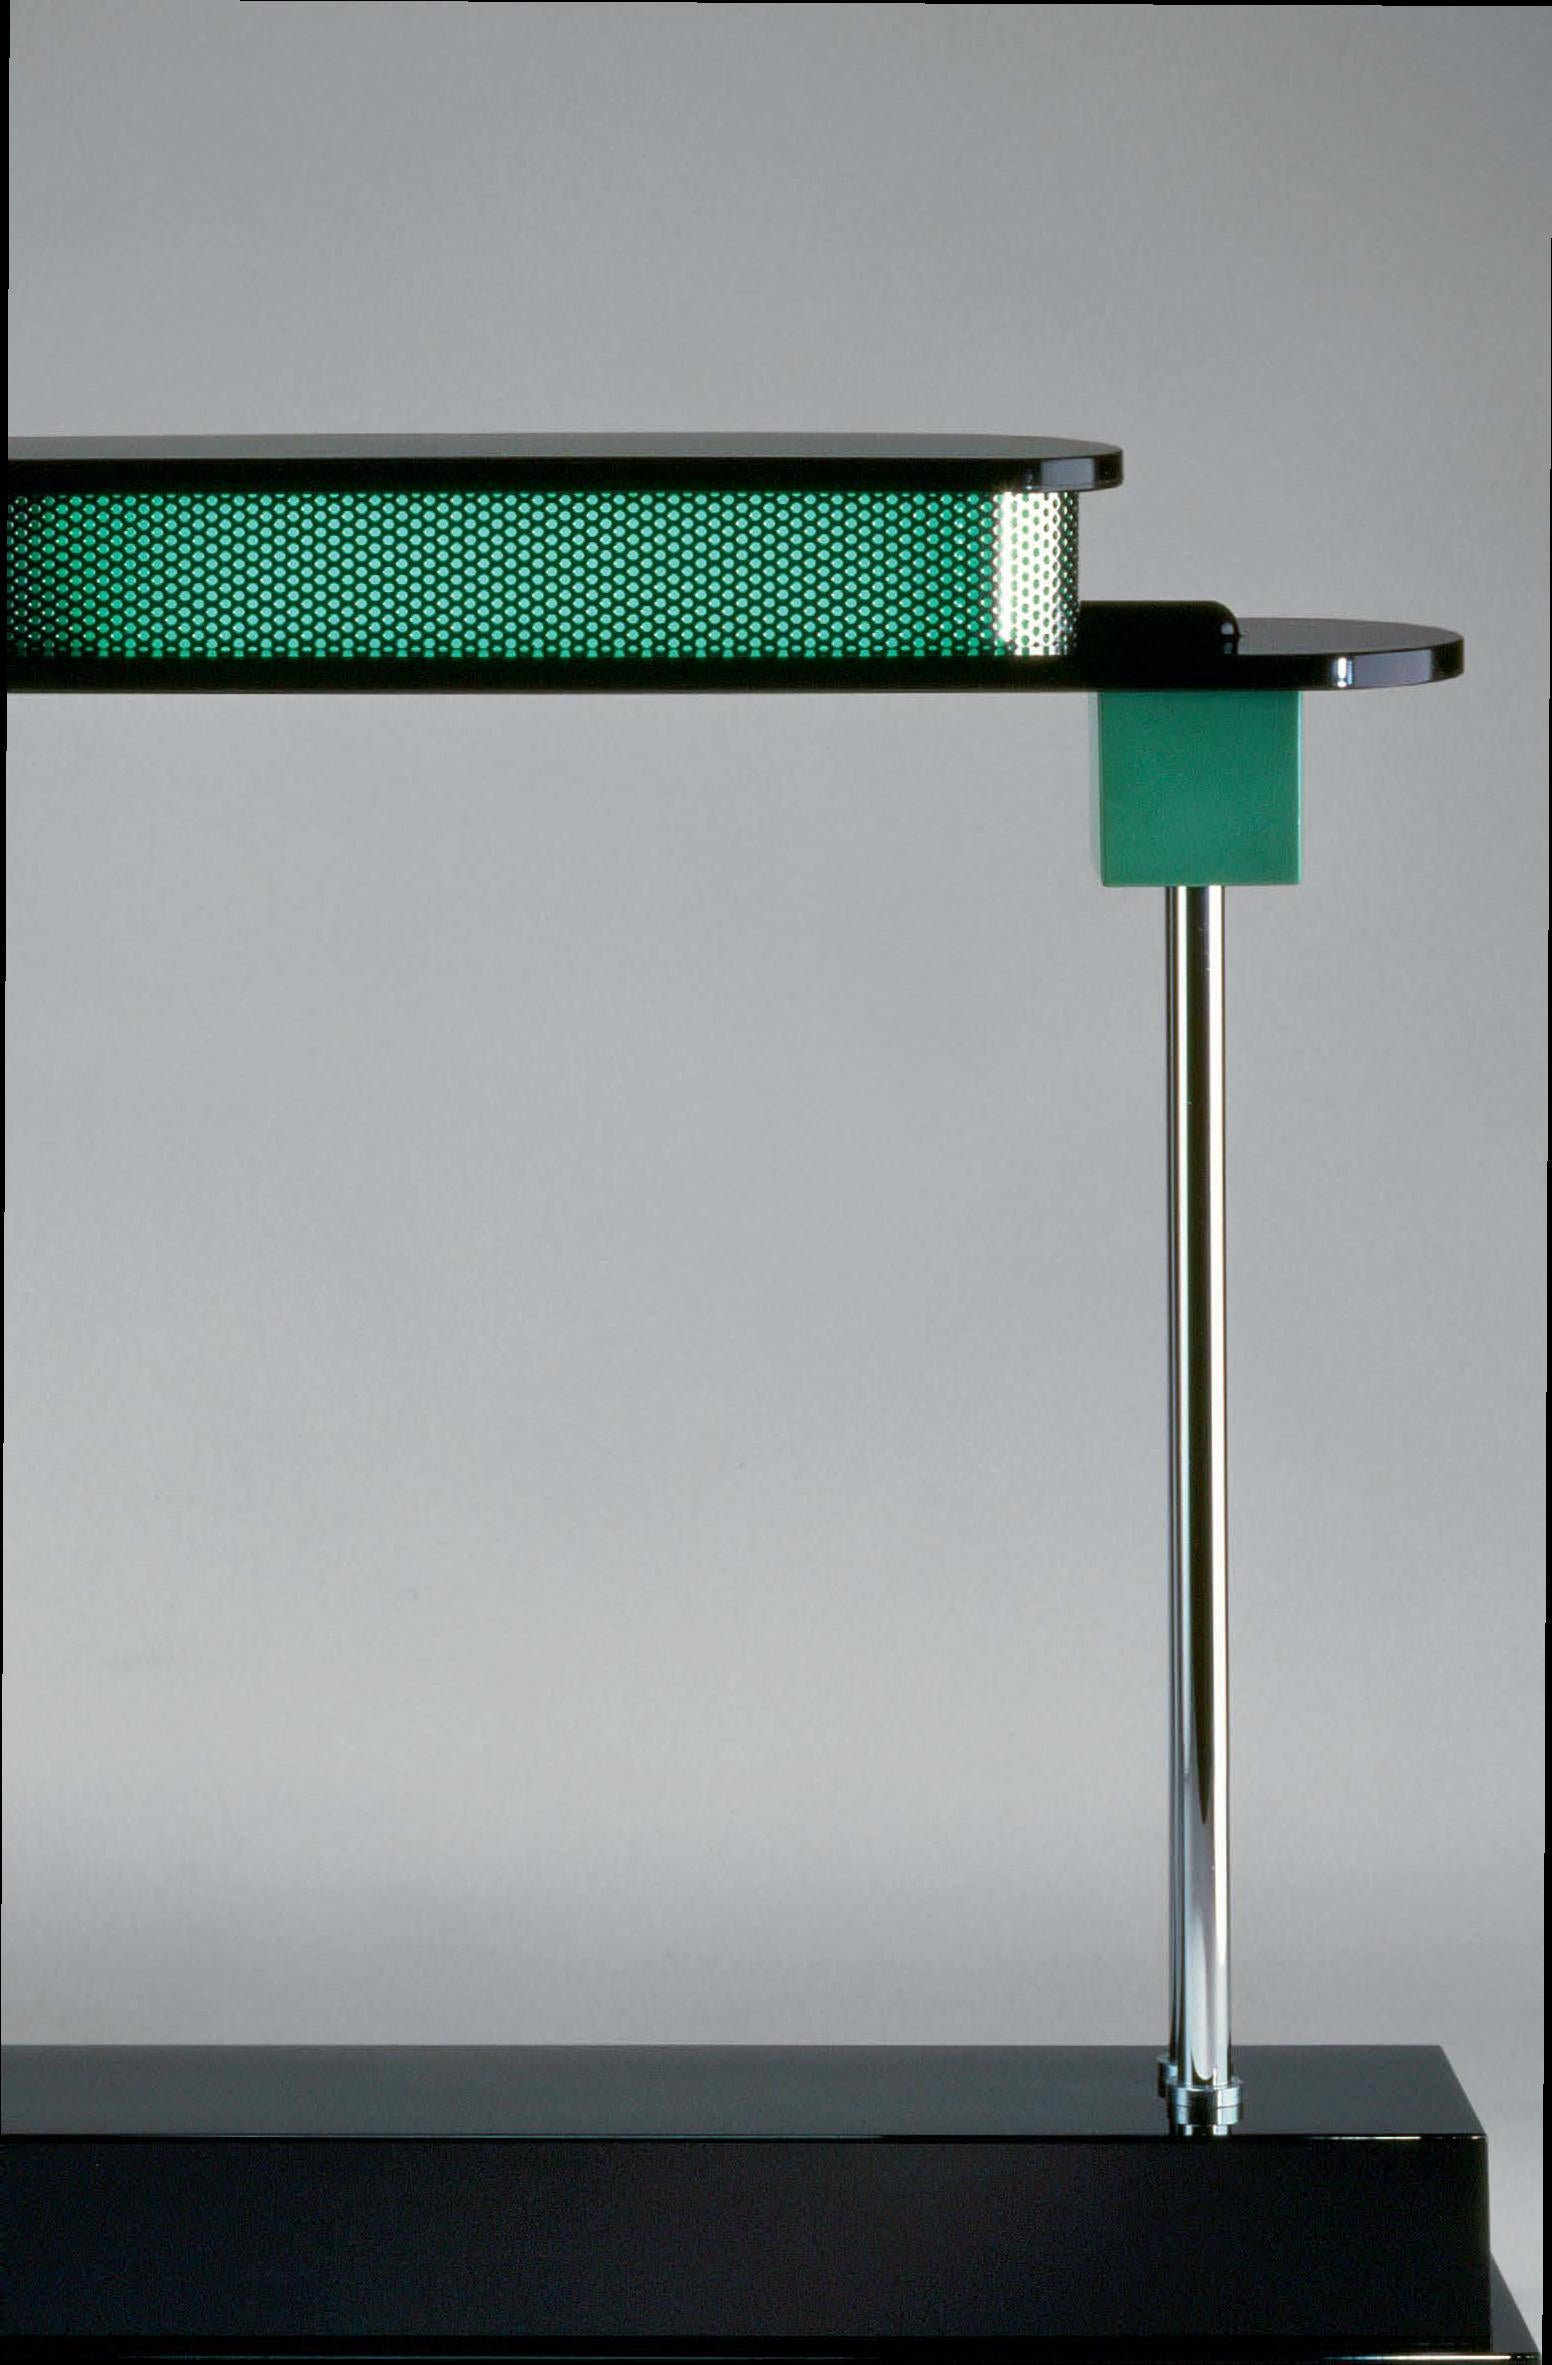 Lampe de table Artemide Pausania LED en noir et vert par Ettore Sottsass.
 
Parrain du design italien contemporain, Ettore Sottsass pensait que les produits devaient être aussi sensuels que fonctionnels. Architecte de formation, Sottsass a été l'un